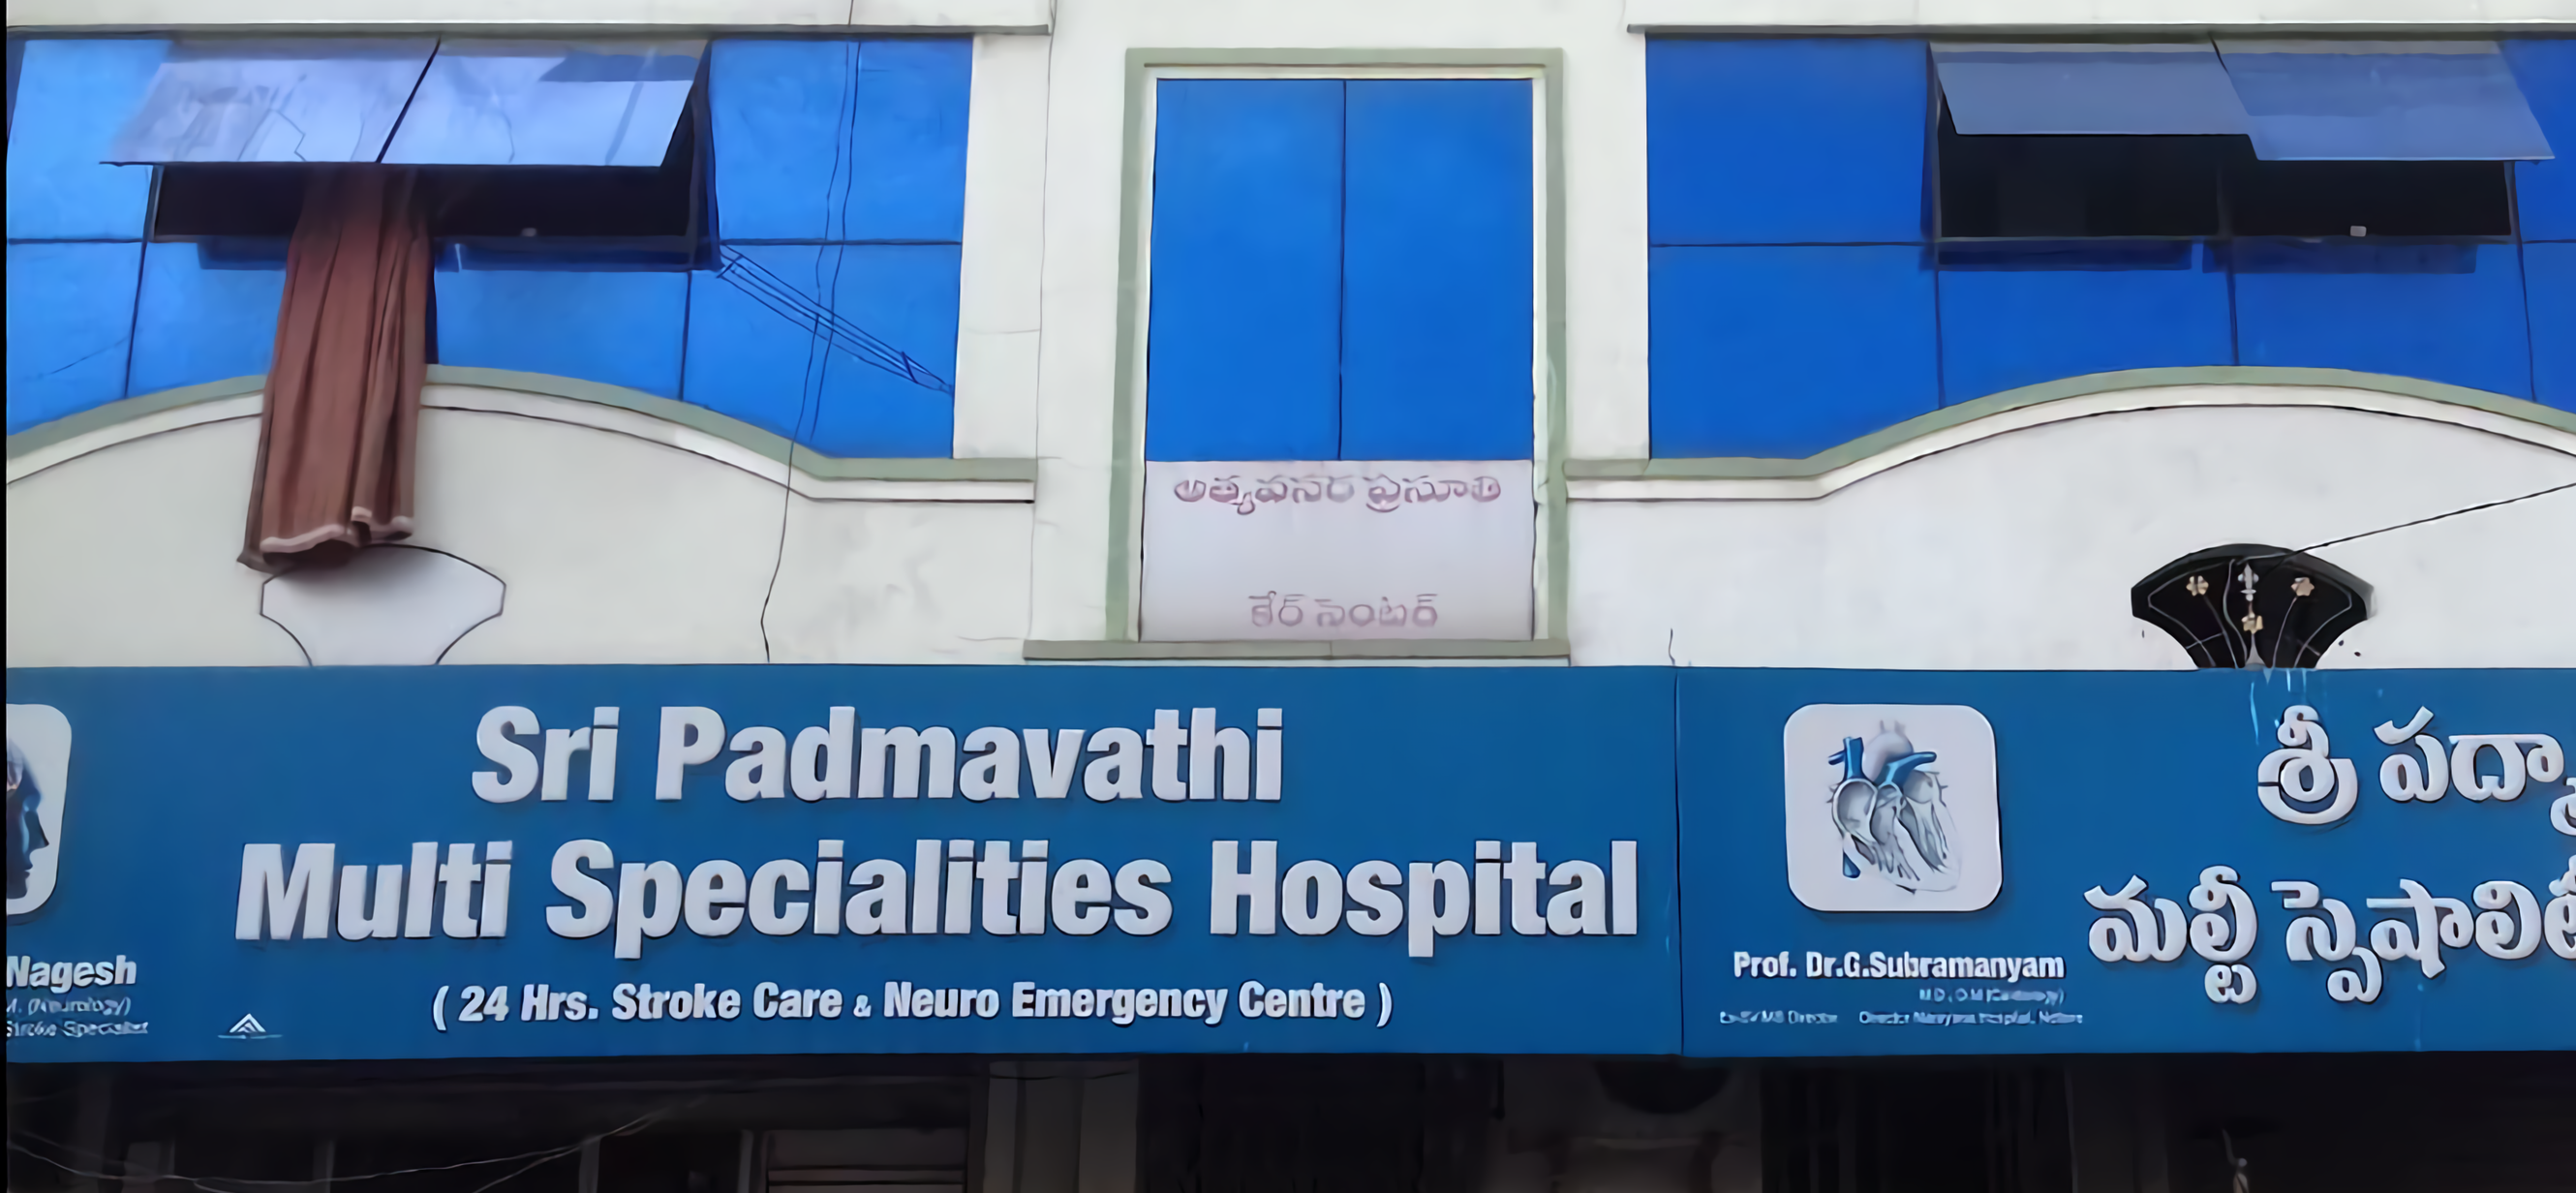 Sri Padmavathi Multi Specialities Hospital